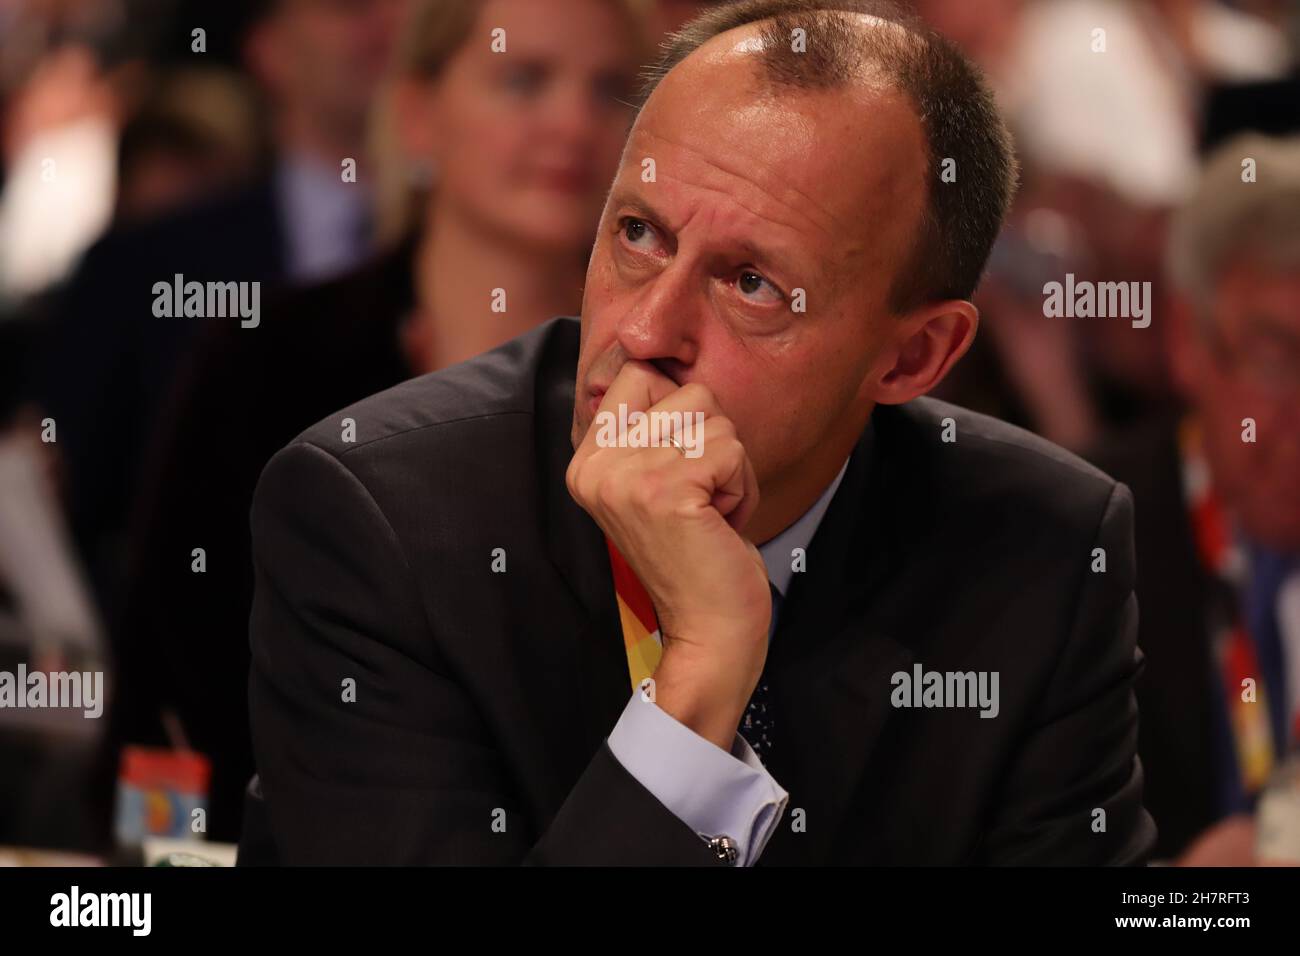 Friedrich Merz Kandidat für den CDU-Parteivorsitz auf dem Bundesparteitag der CDU 2018 ad Amburgo: Merz stützt den Kopf auf seine rechte Hand und blickt aufmerksam nach rechts oben Foto Stock